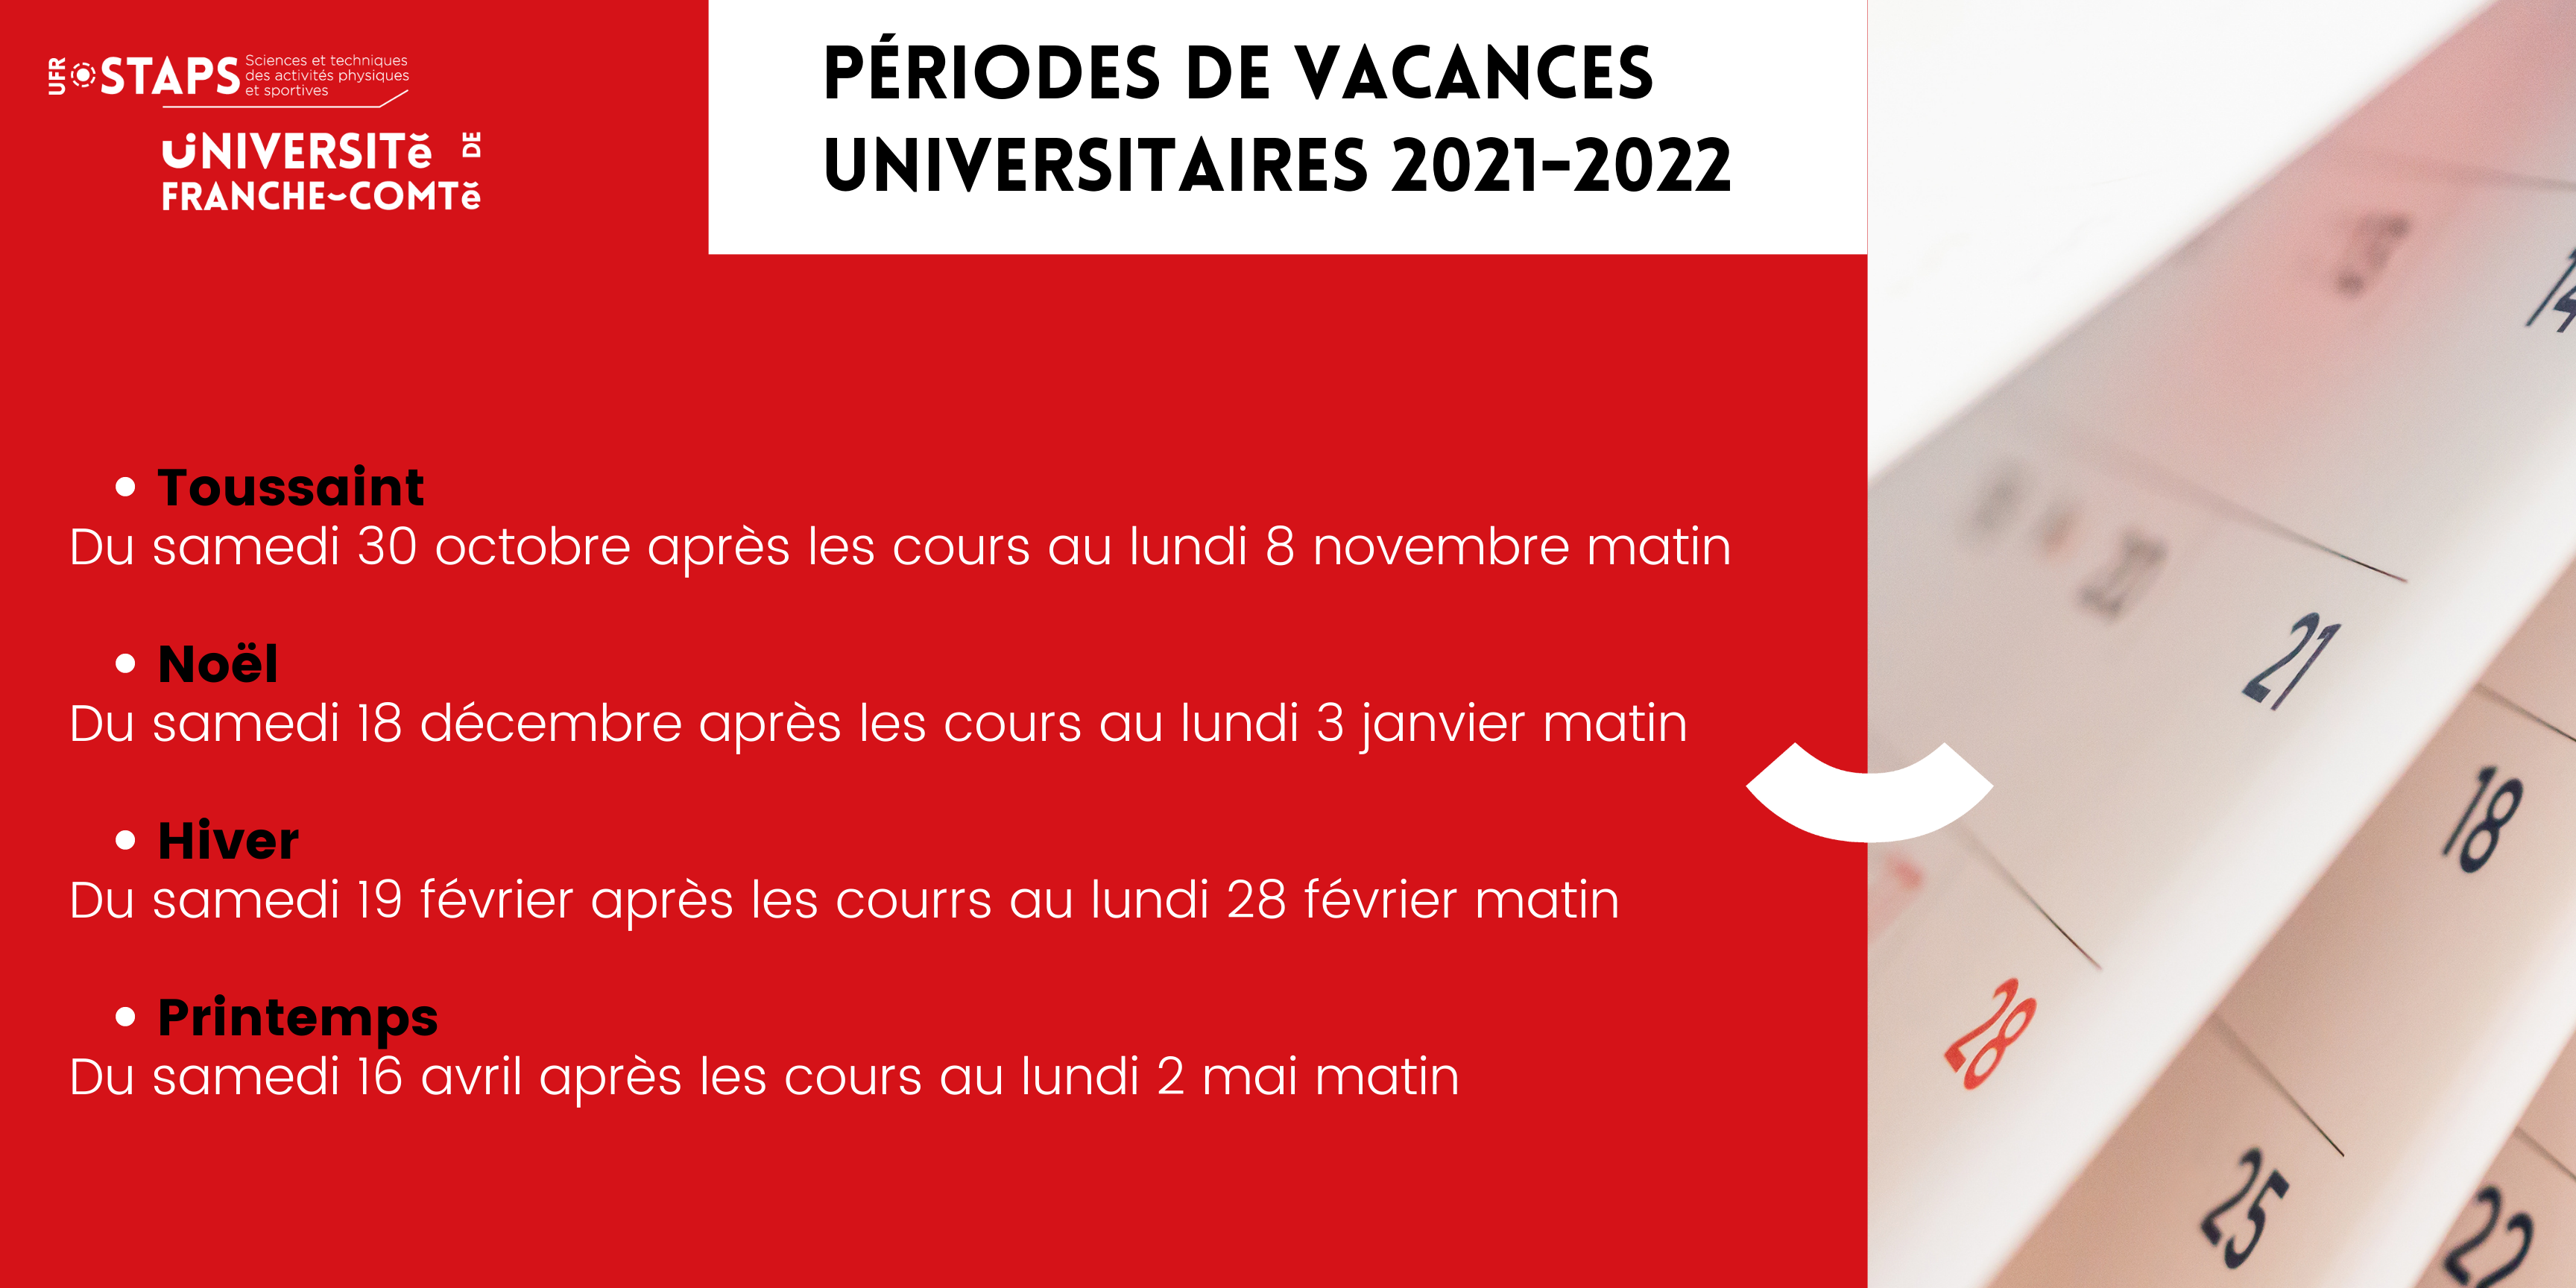 Périodes de vacances universitaires 2021-2022